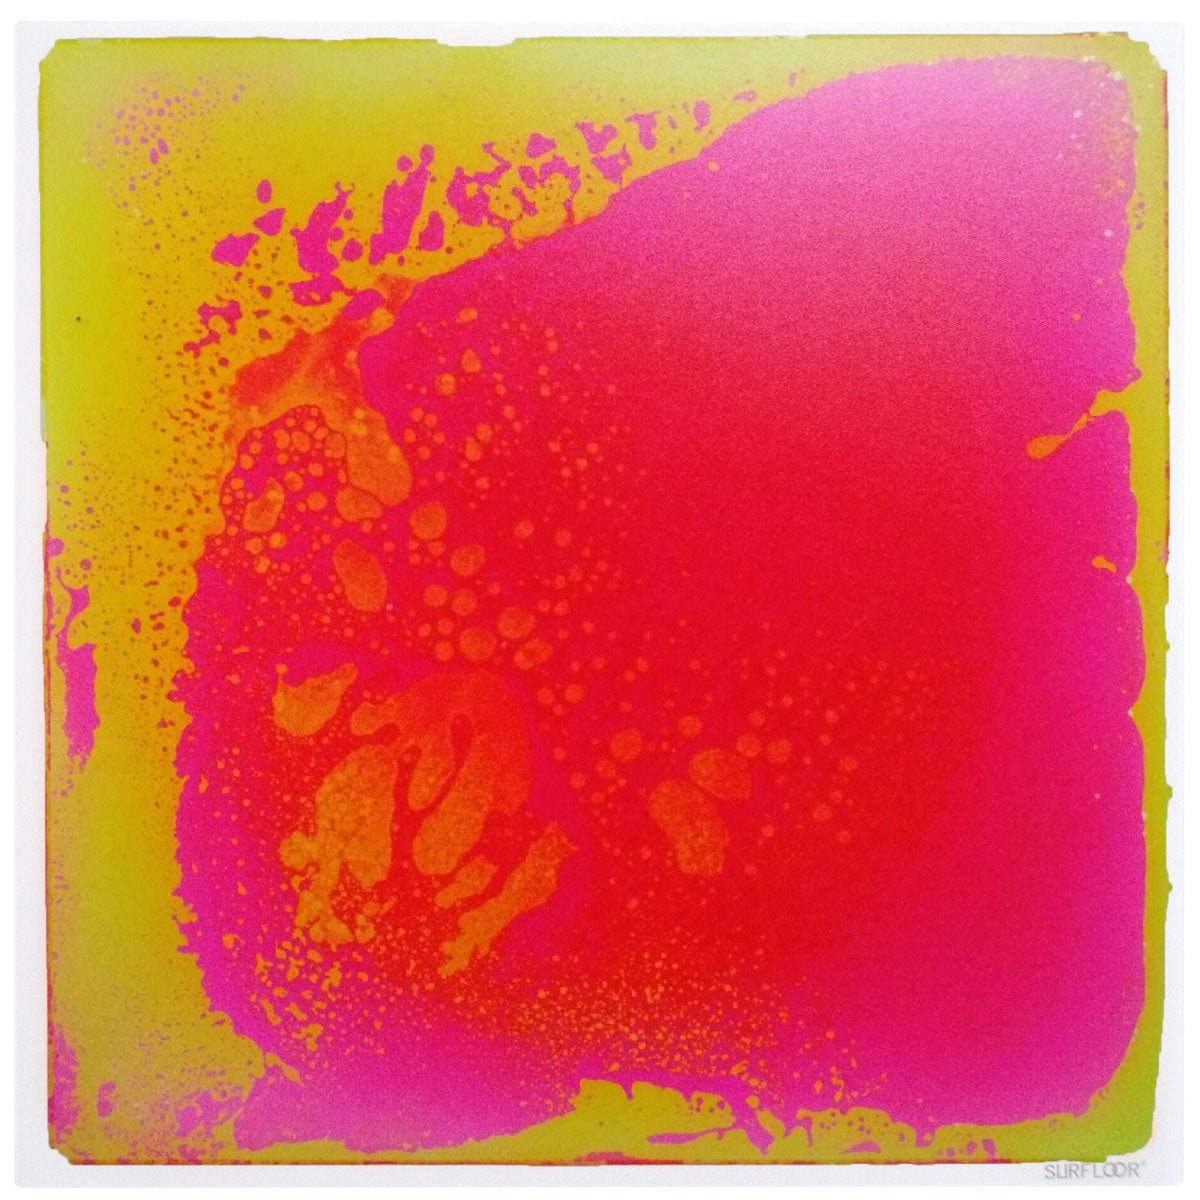 Surfloor Liquid Tiles - Pink & Yellow